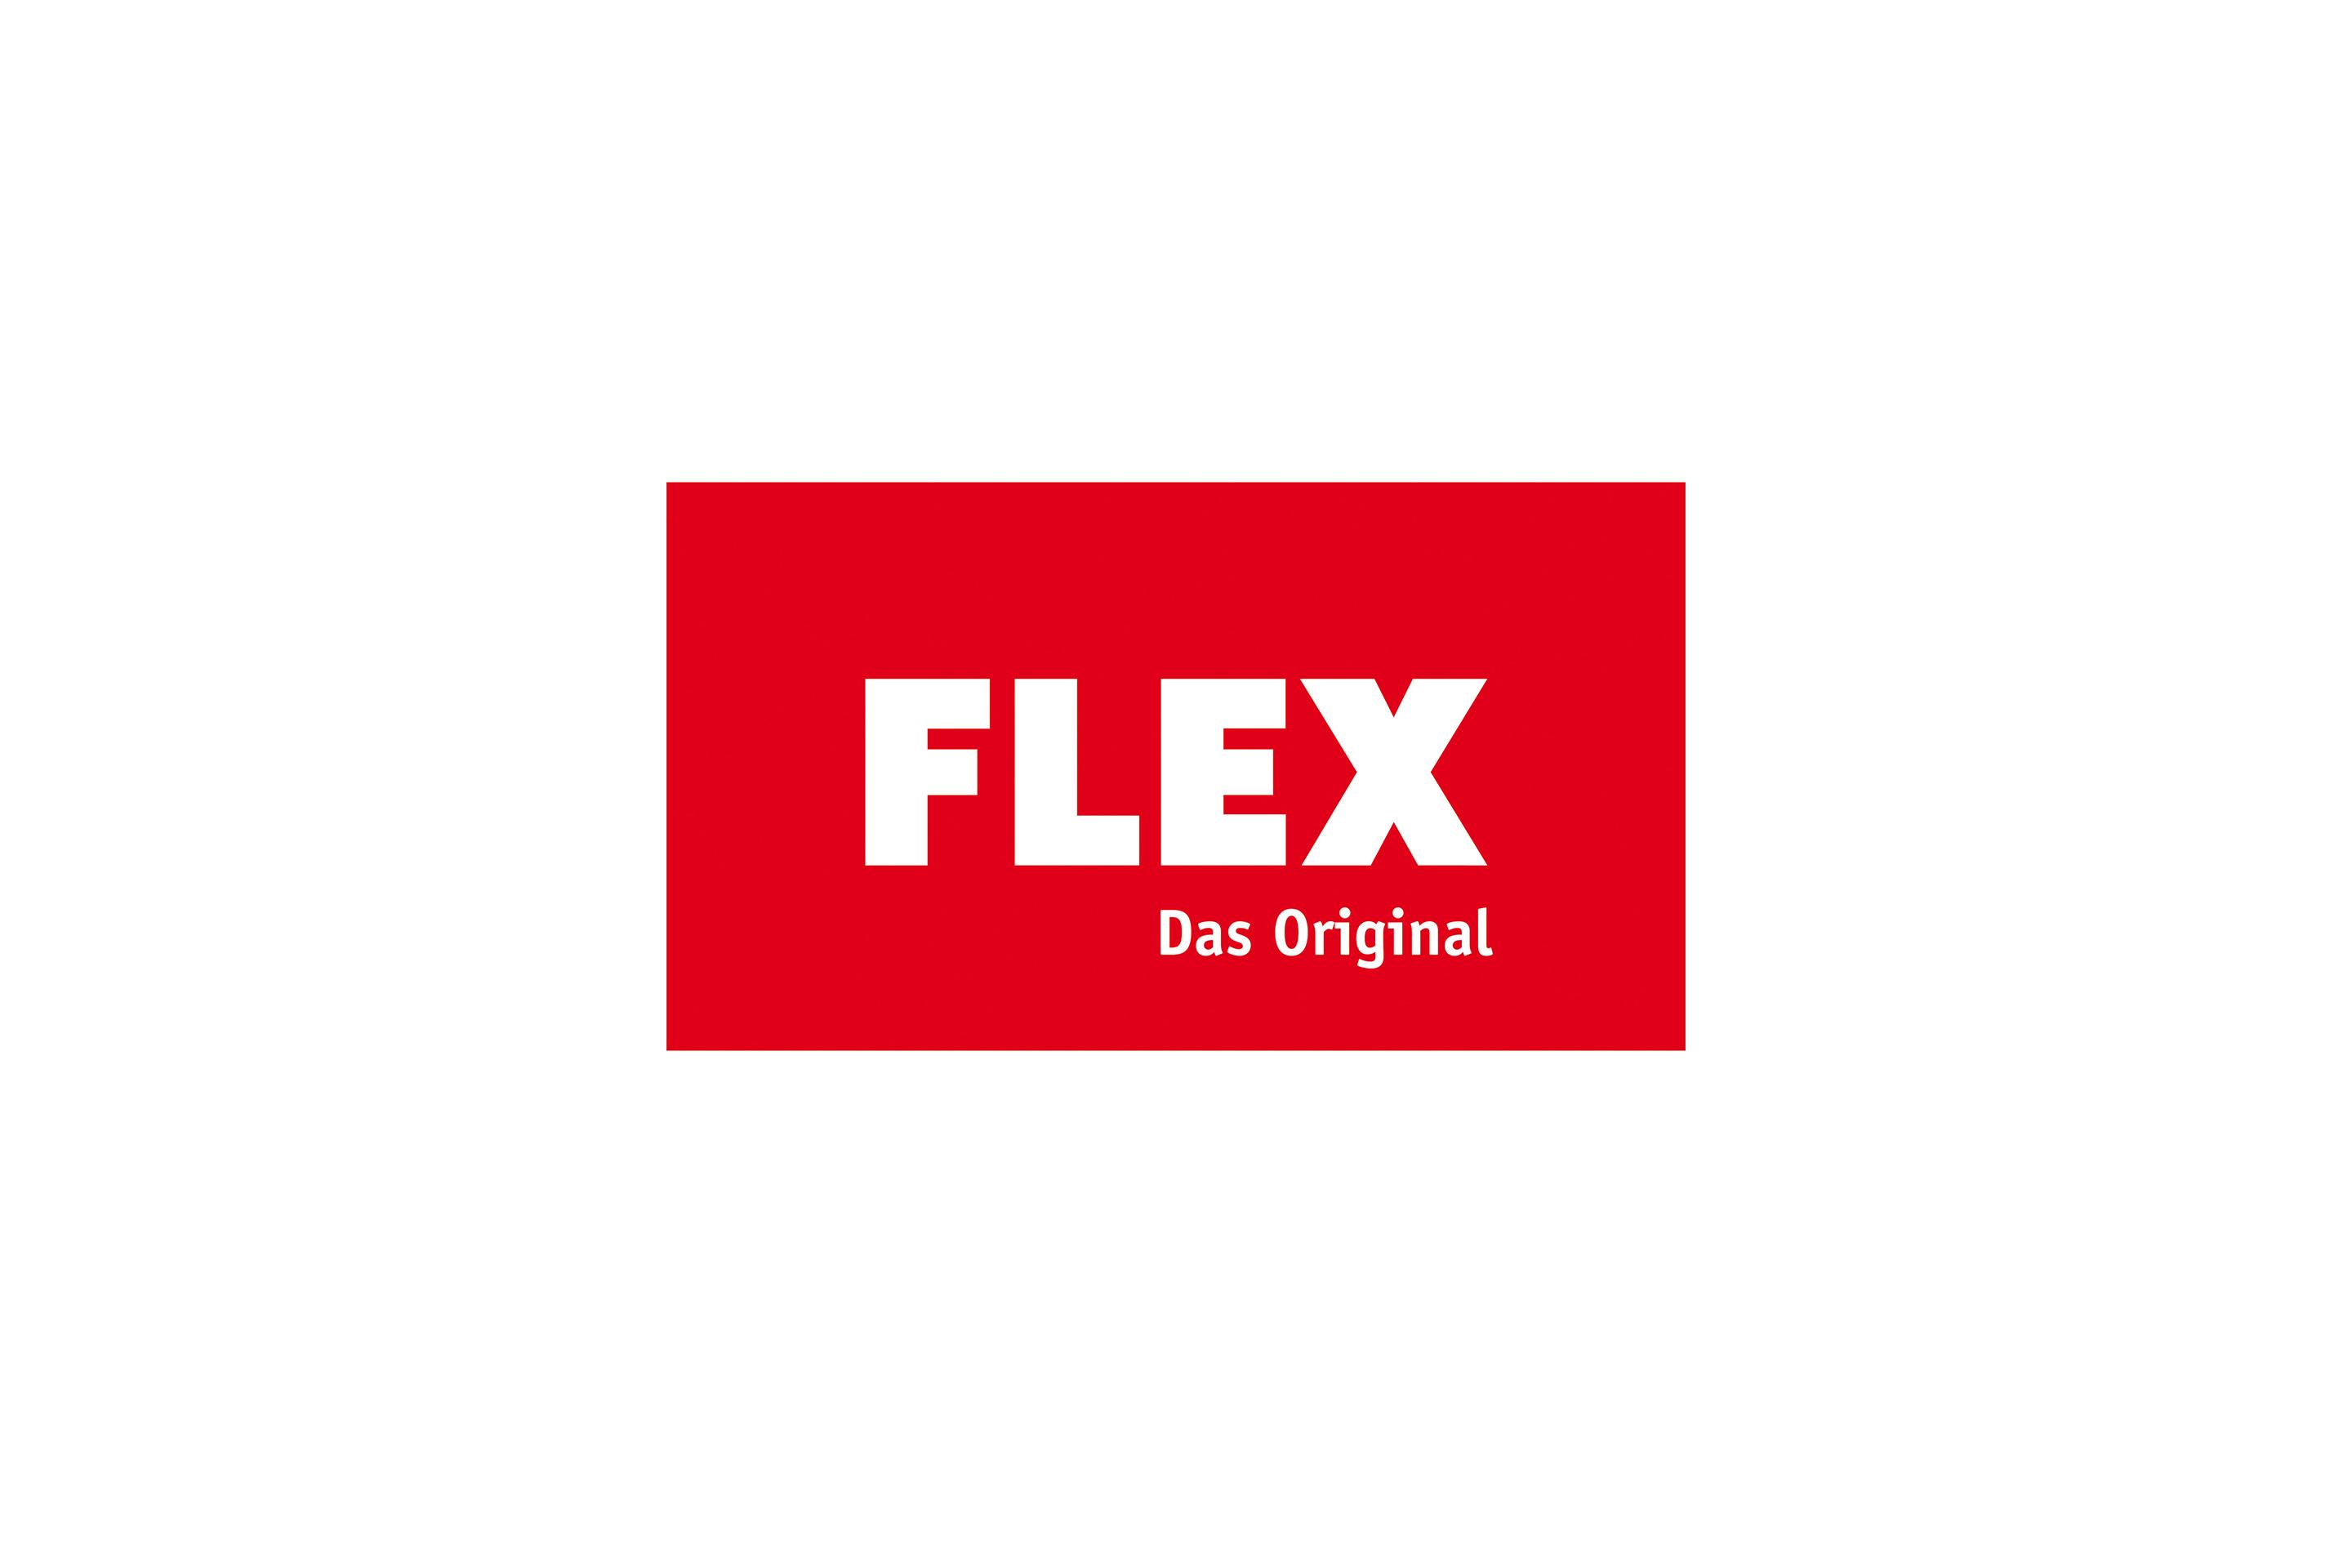 FLEX původní logo historie